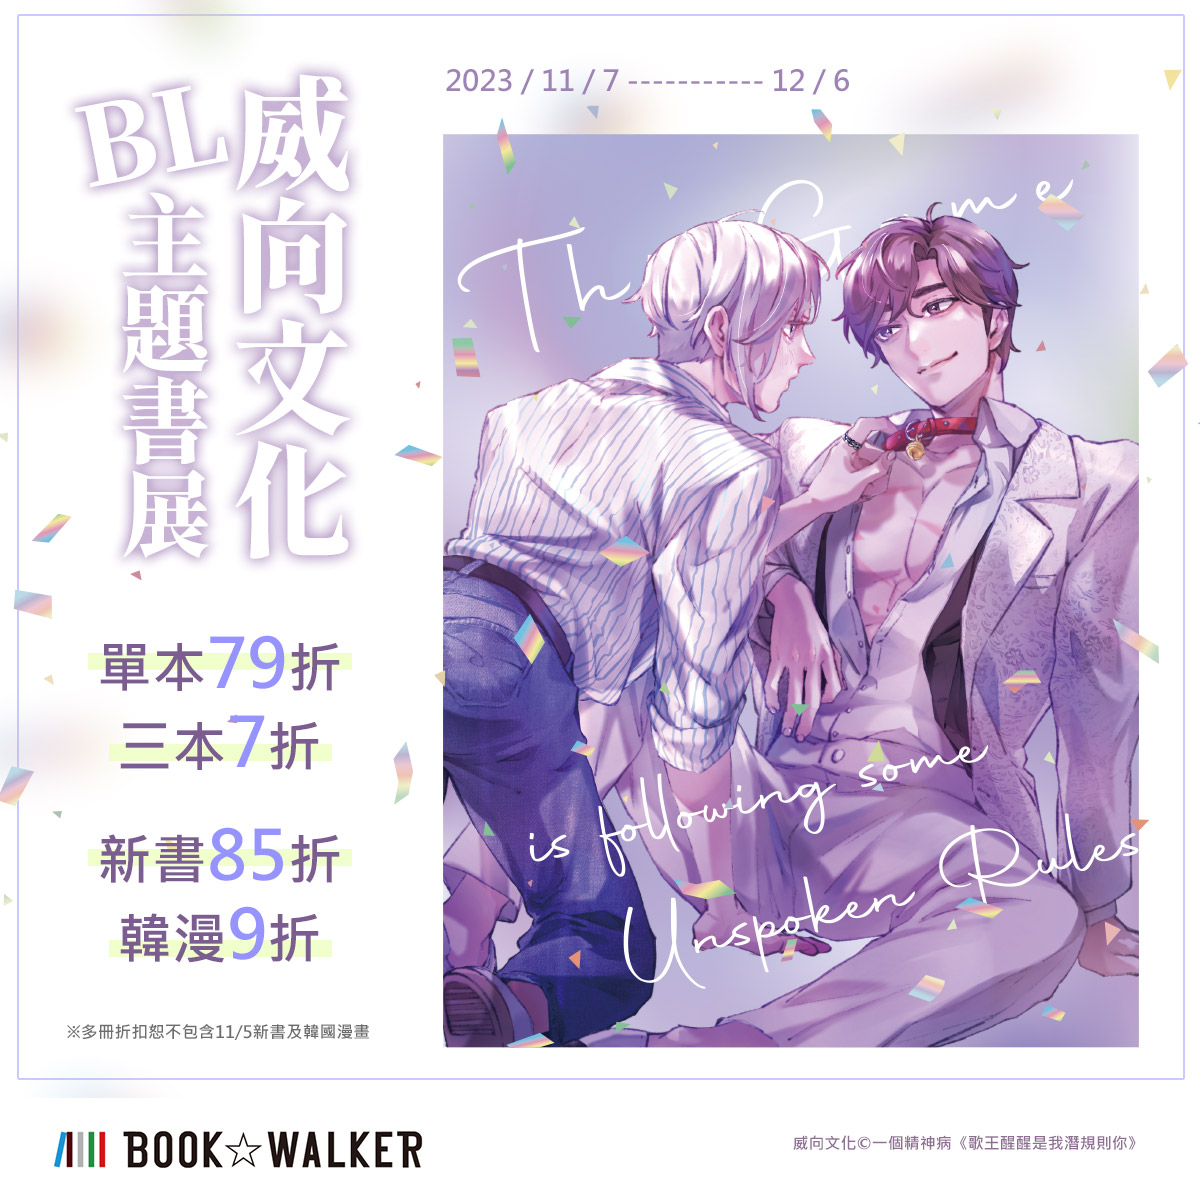 威向文化BL主題書展BOOK☆WALKER 台灣漫讀/ 電子書平台